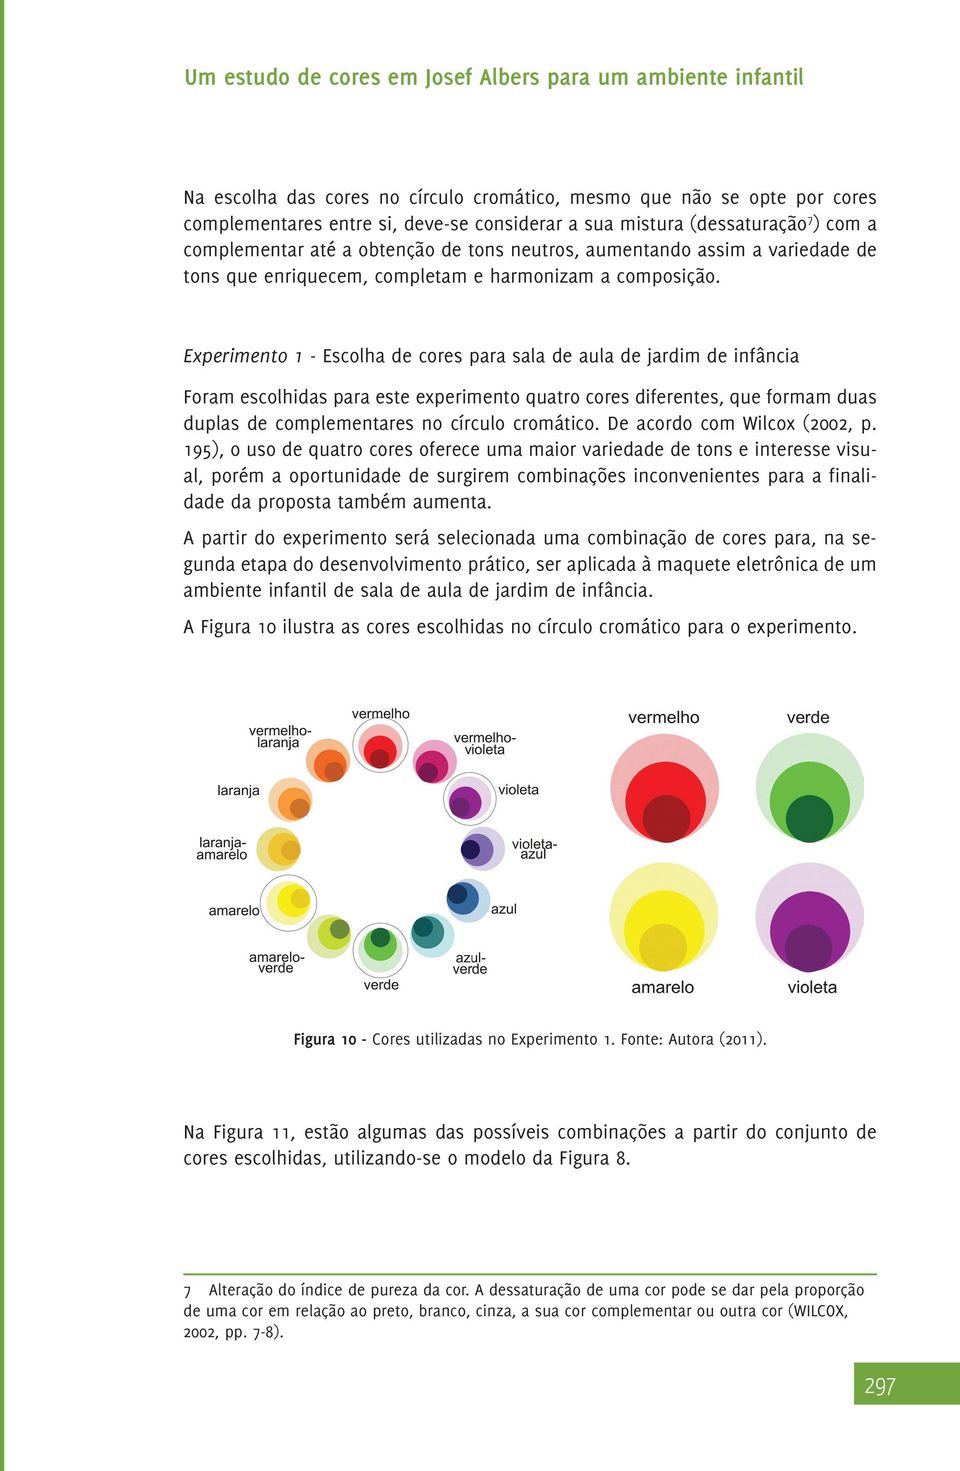 Experimento 1 - Escolha de cores para sala de aula de jardim de infância Foram escolhidas para este experimento quatro cores diferentes, que formam duas duplas de complementares no círculo cromático.